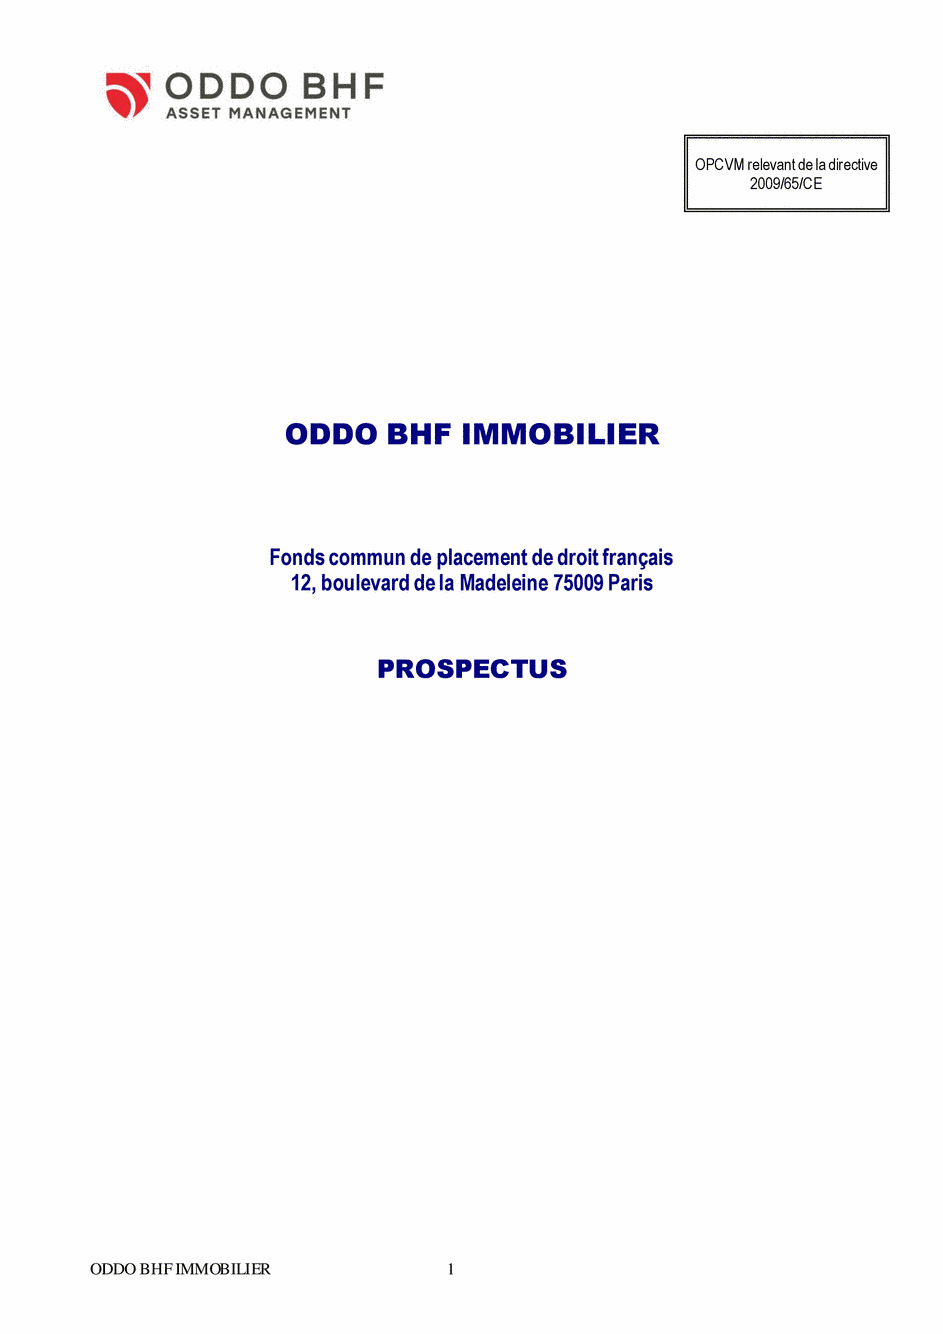 Prospectus ODDO BHF IMMOBILIER GC-EUR - 14/02/2020 - Français